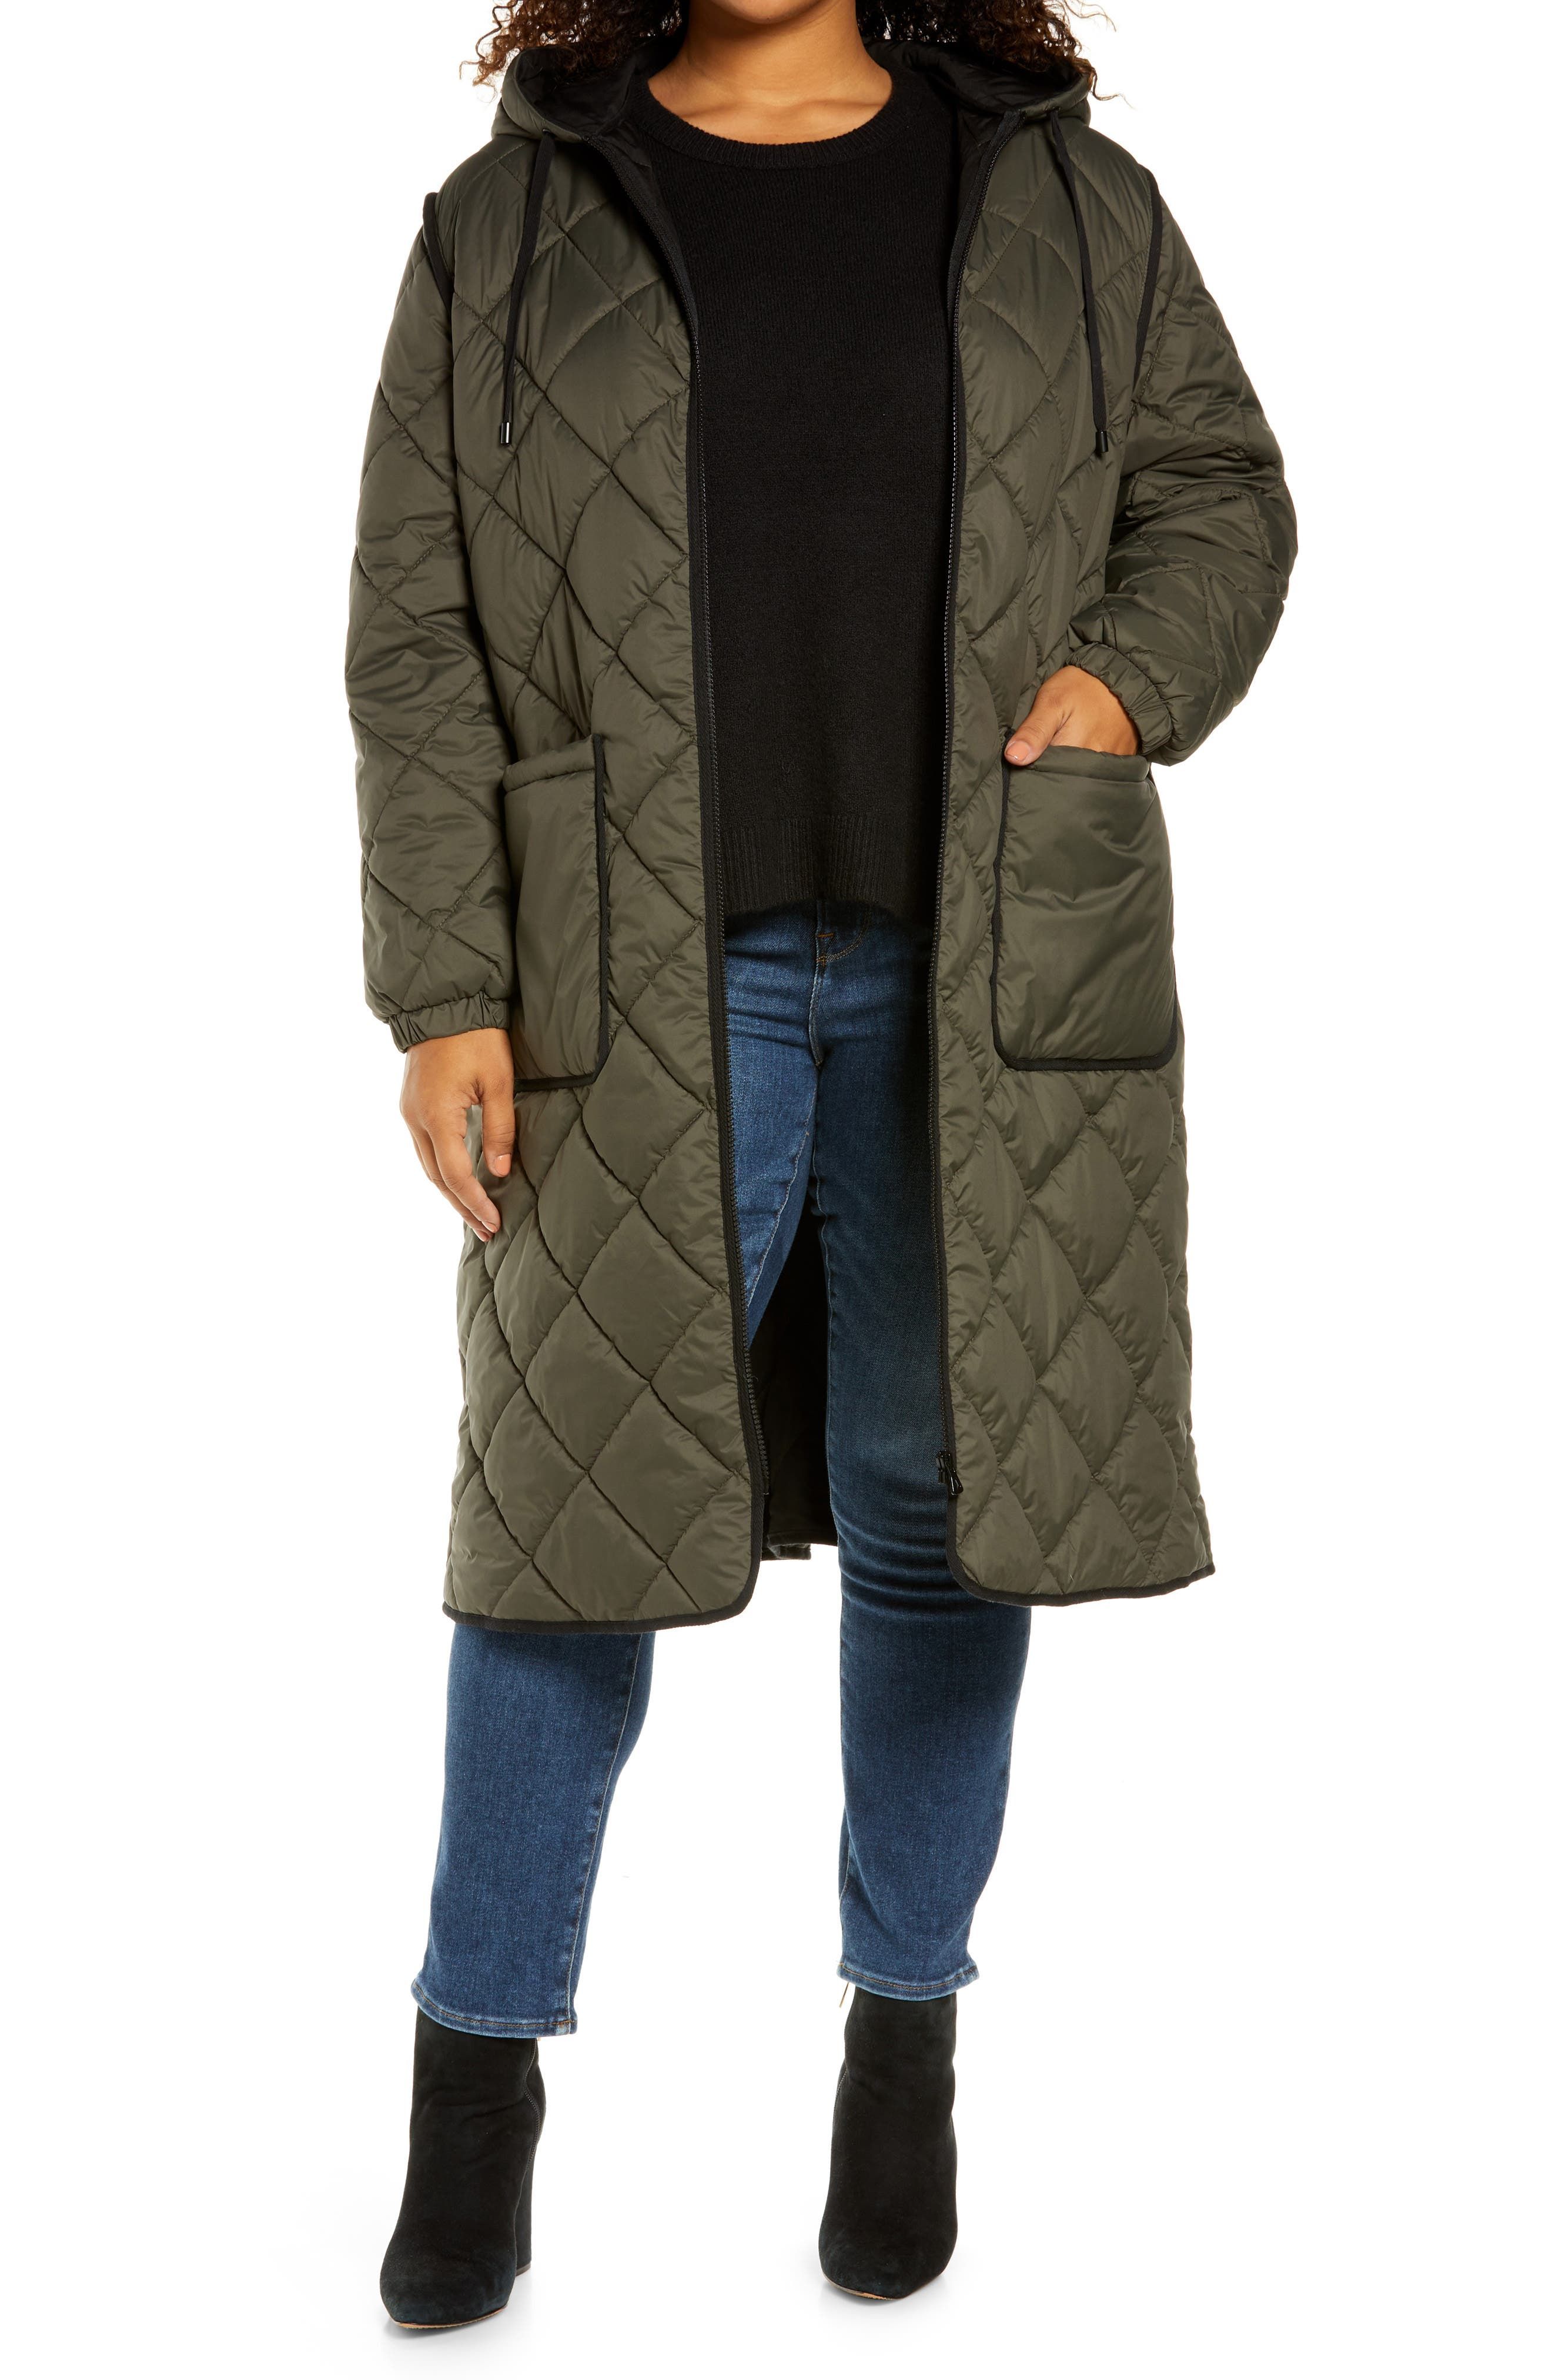 21 Best Plus-Size Coats for Women in 2021